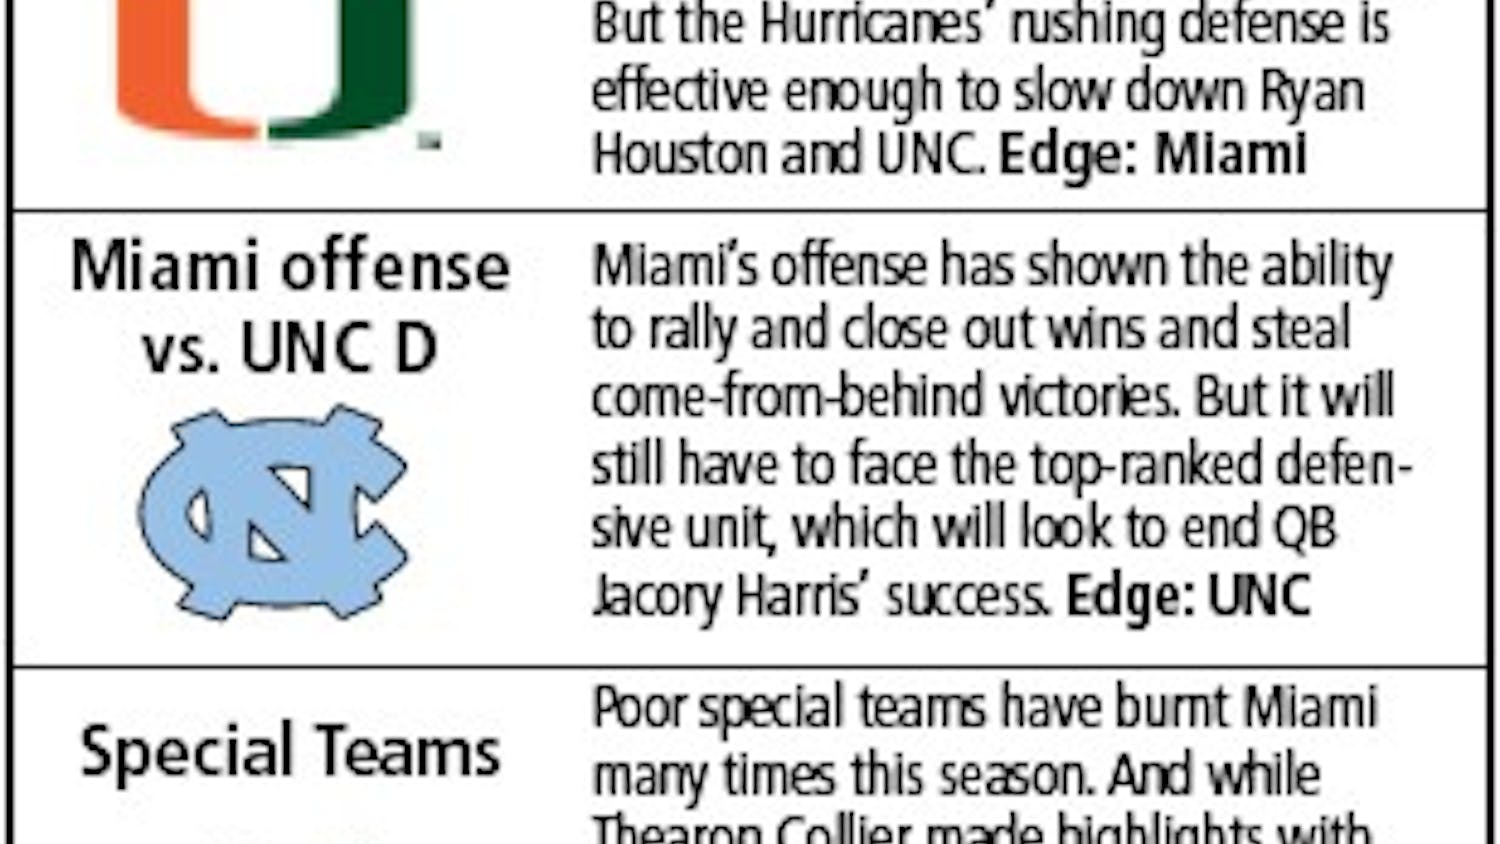 Predictions for UNC v. Miami